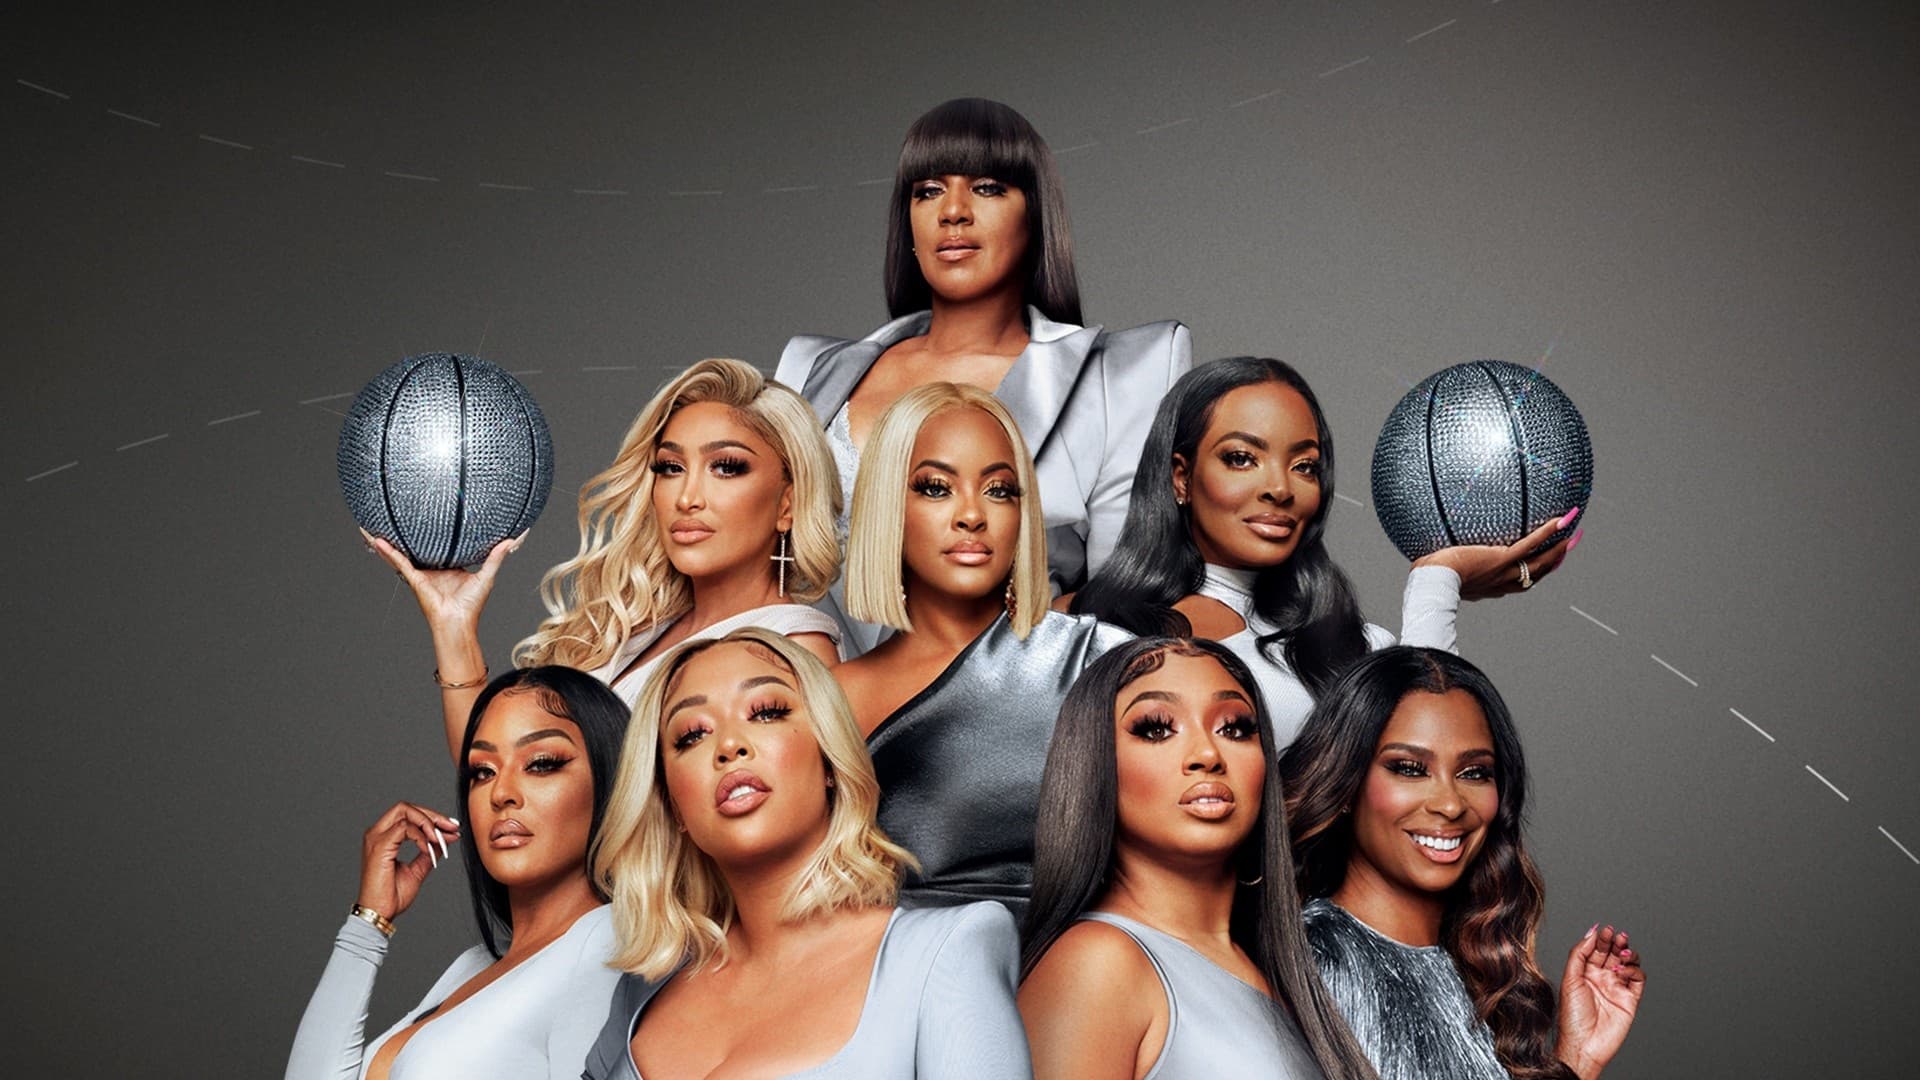 Basketball Wives season 11